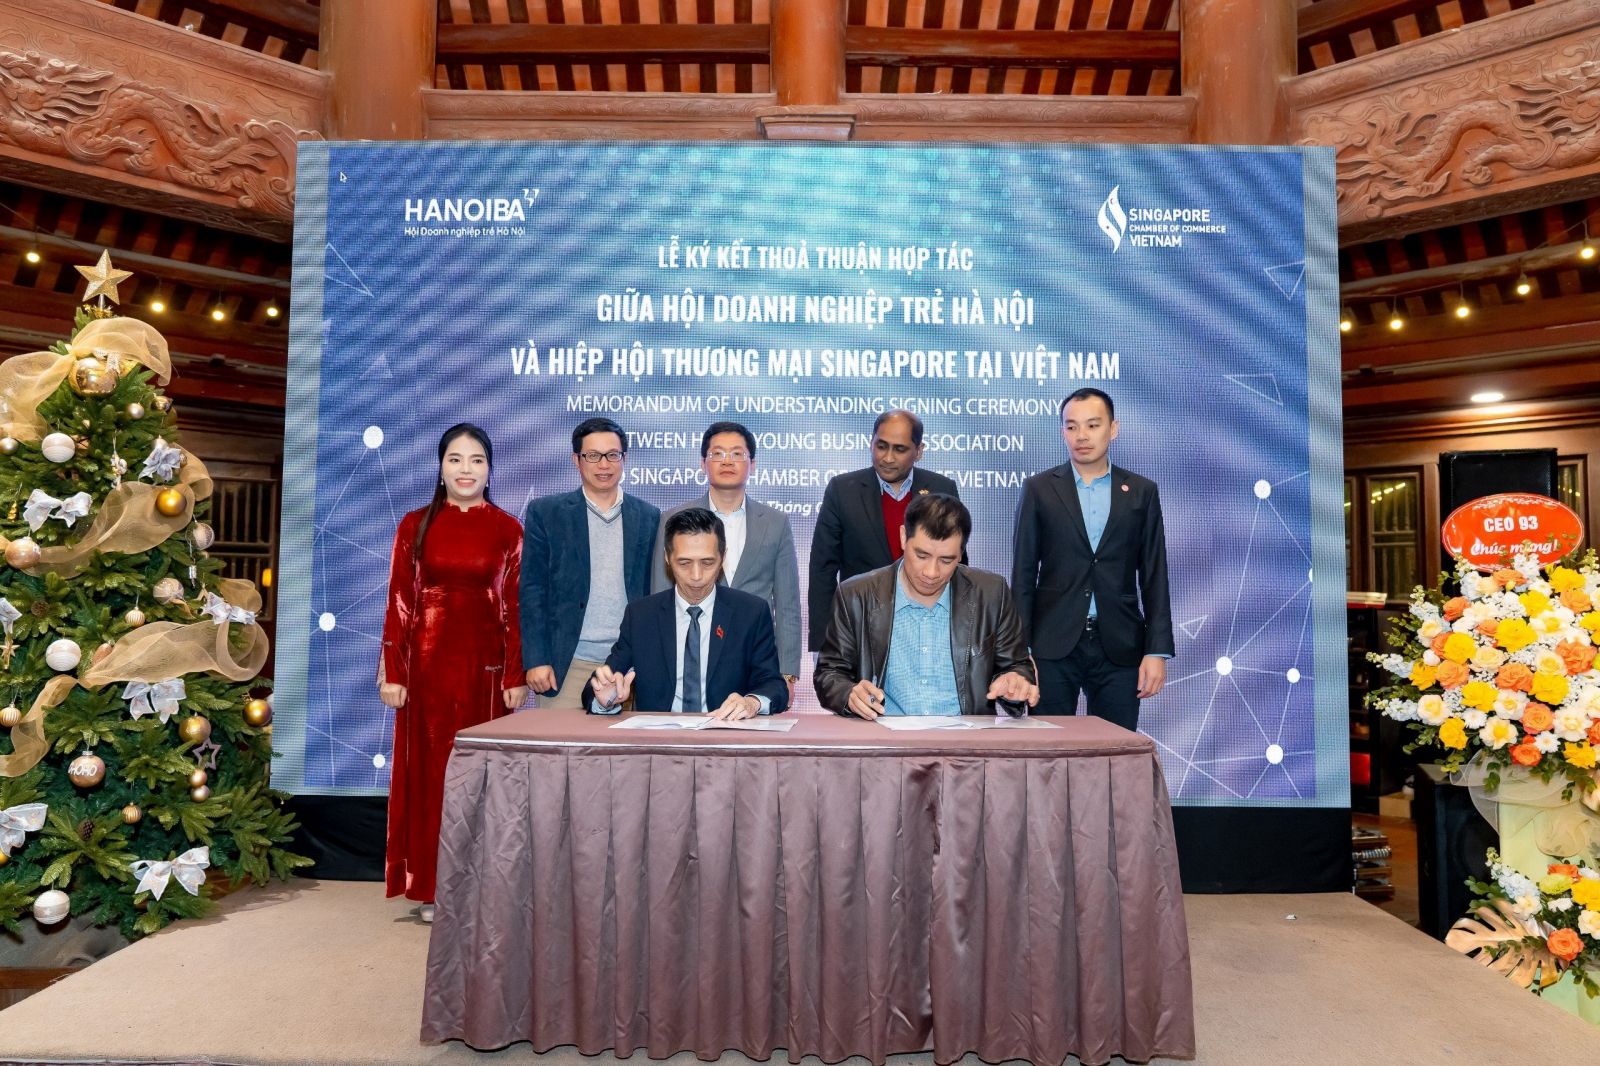 HanoiBA vừa ký kết hợp tác với Hiệp hội Thương mại Singapore tại Việt Nam (SCCV) và với Hiệp hội Doanh nghiệp Hàn Quốc tại Việt Nam (KOCHAM).